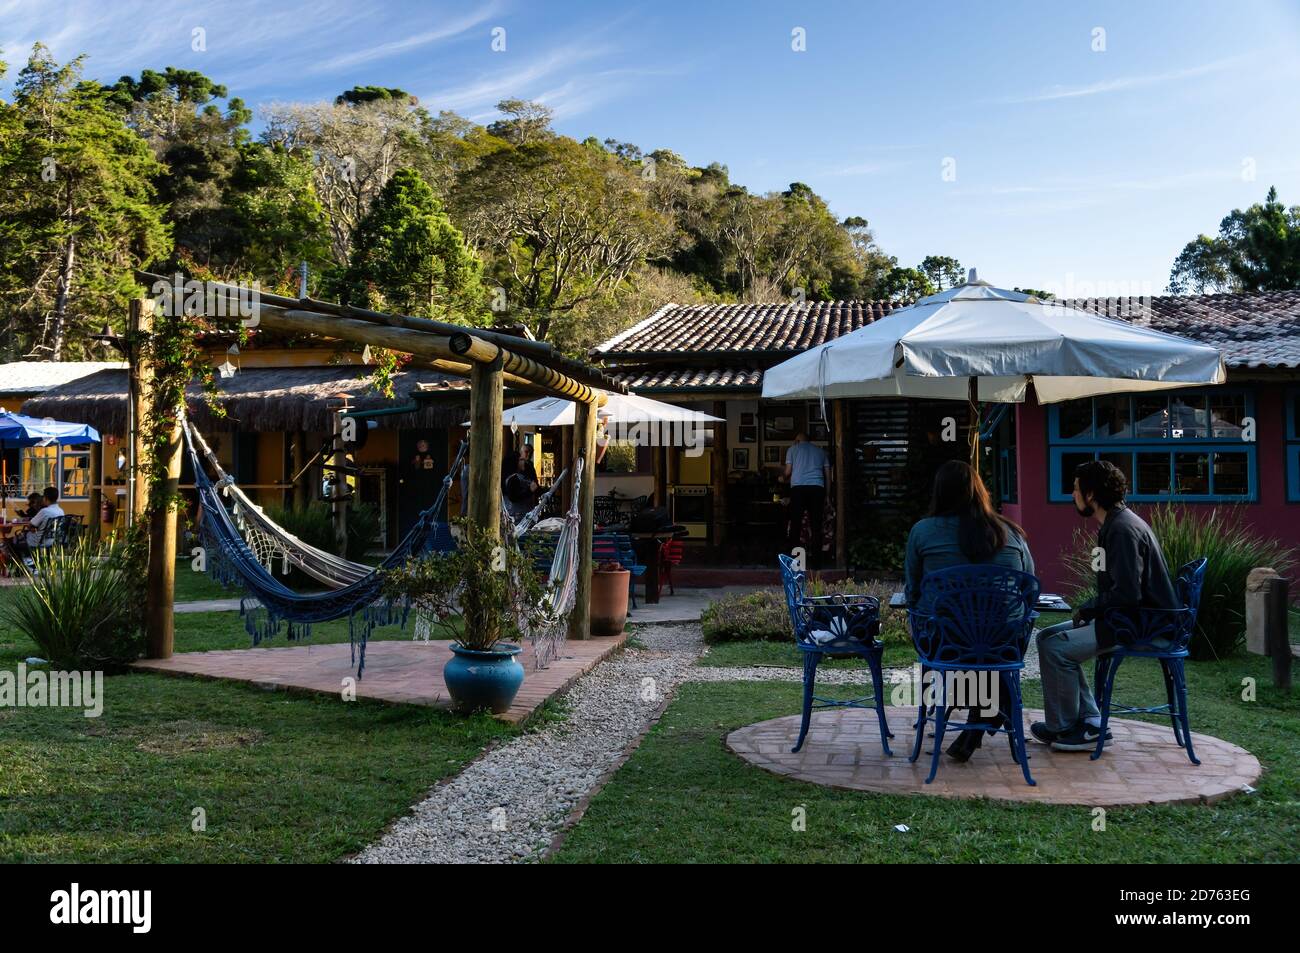 Le jardin intérieur du Moara Cafe, confortable et joliment décoré, où les clients peuvent se détendre tout en prenant un café. Cunha, Sao Paulo - Brésil. Banque D'Images